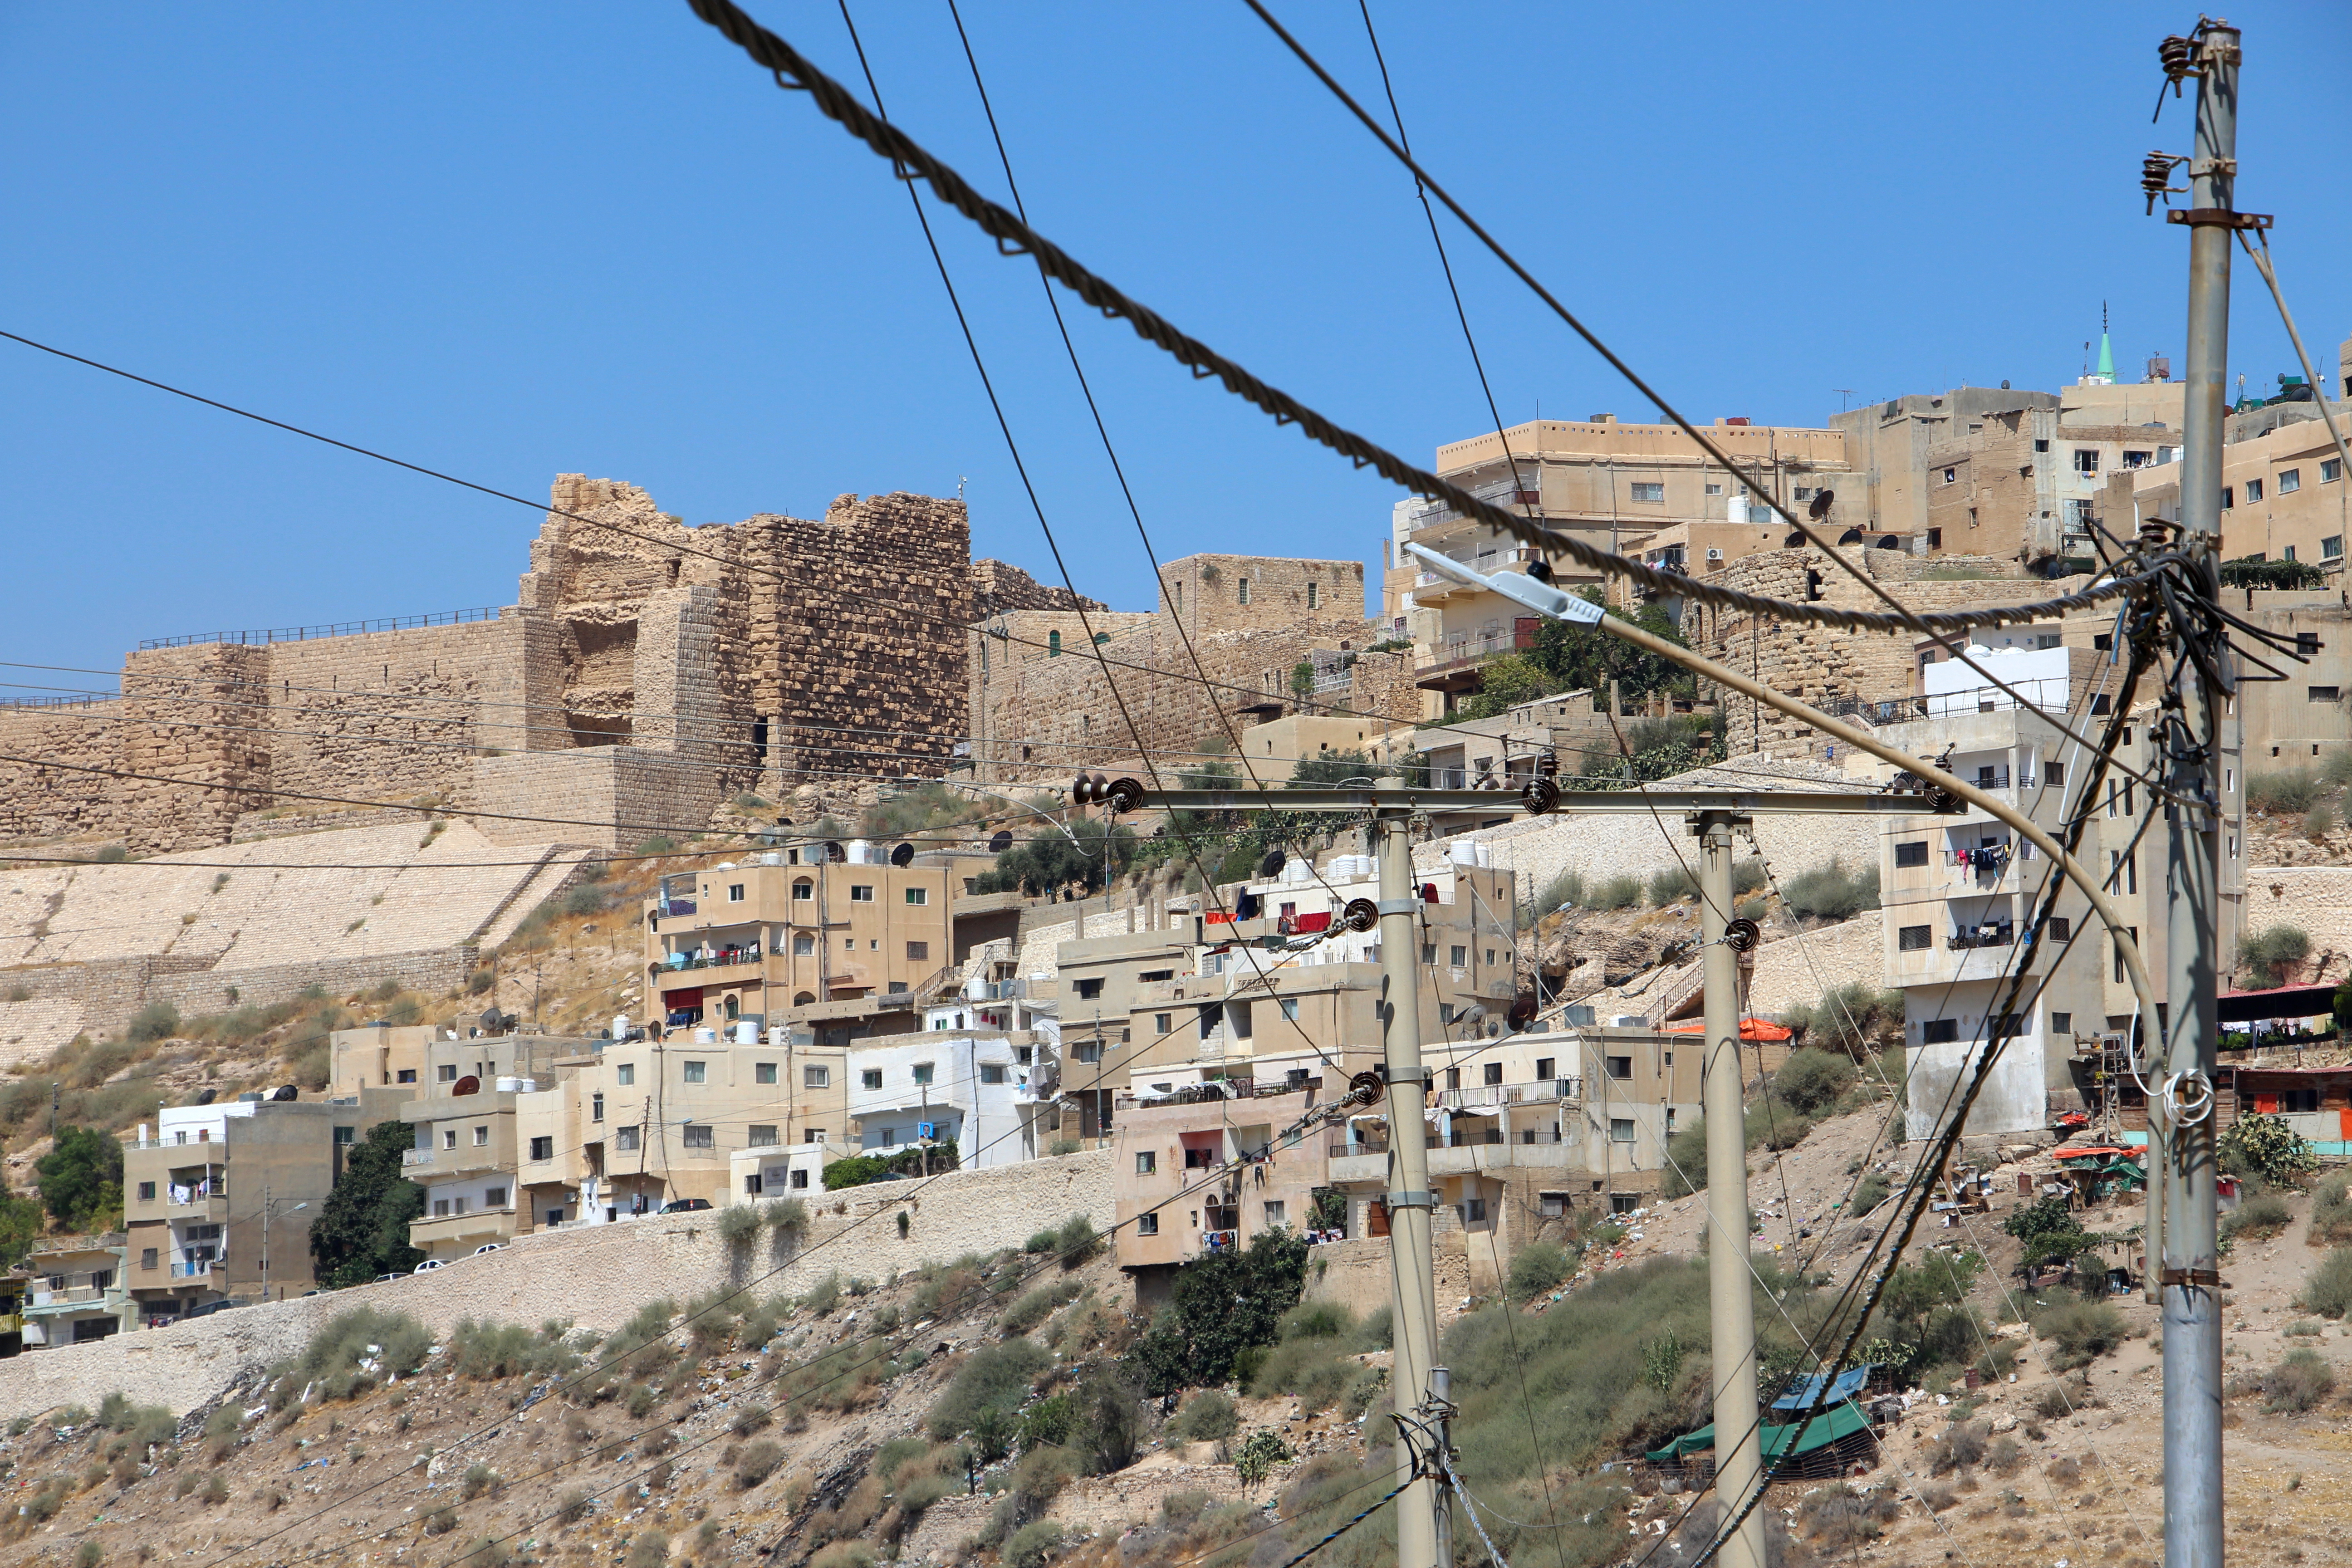 Kerak Castle, Jordan